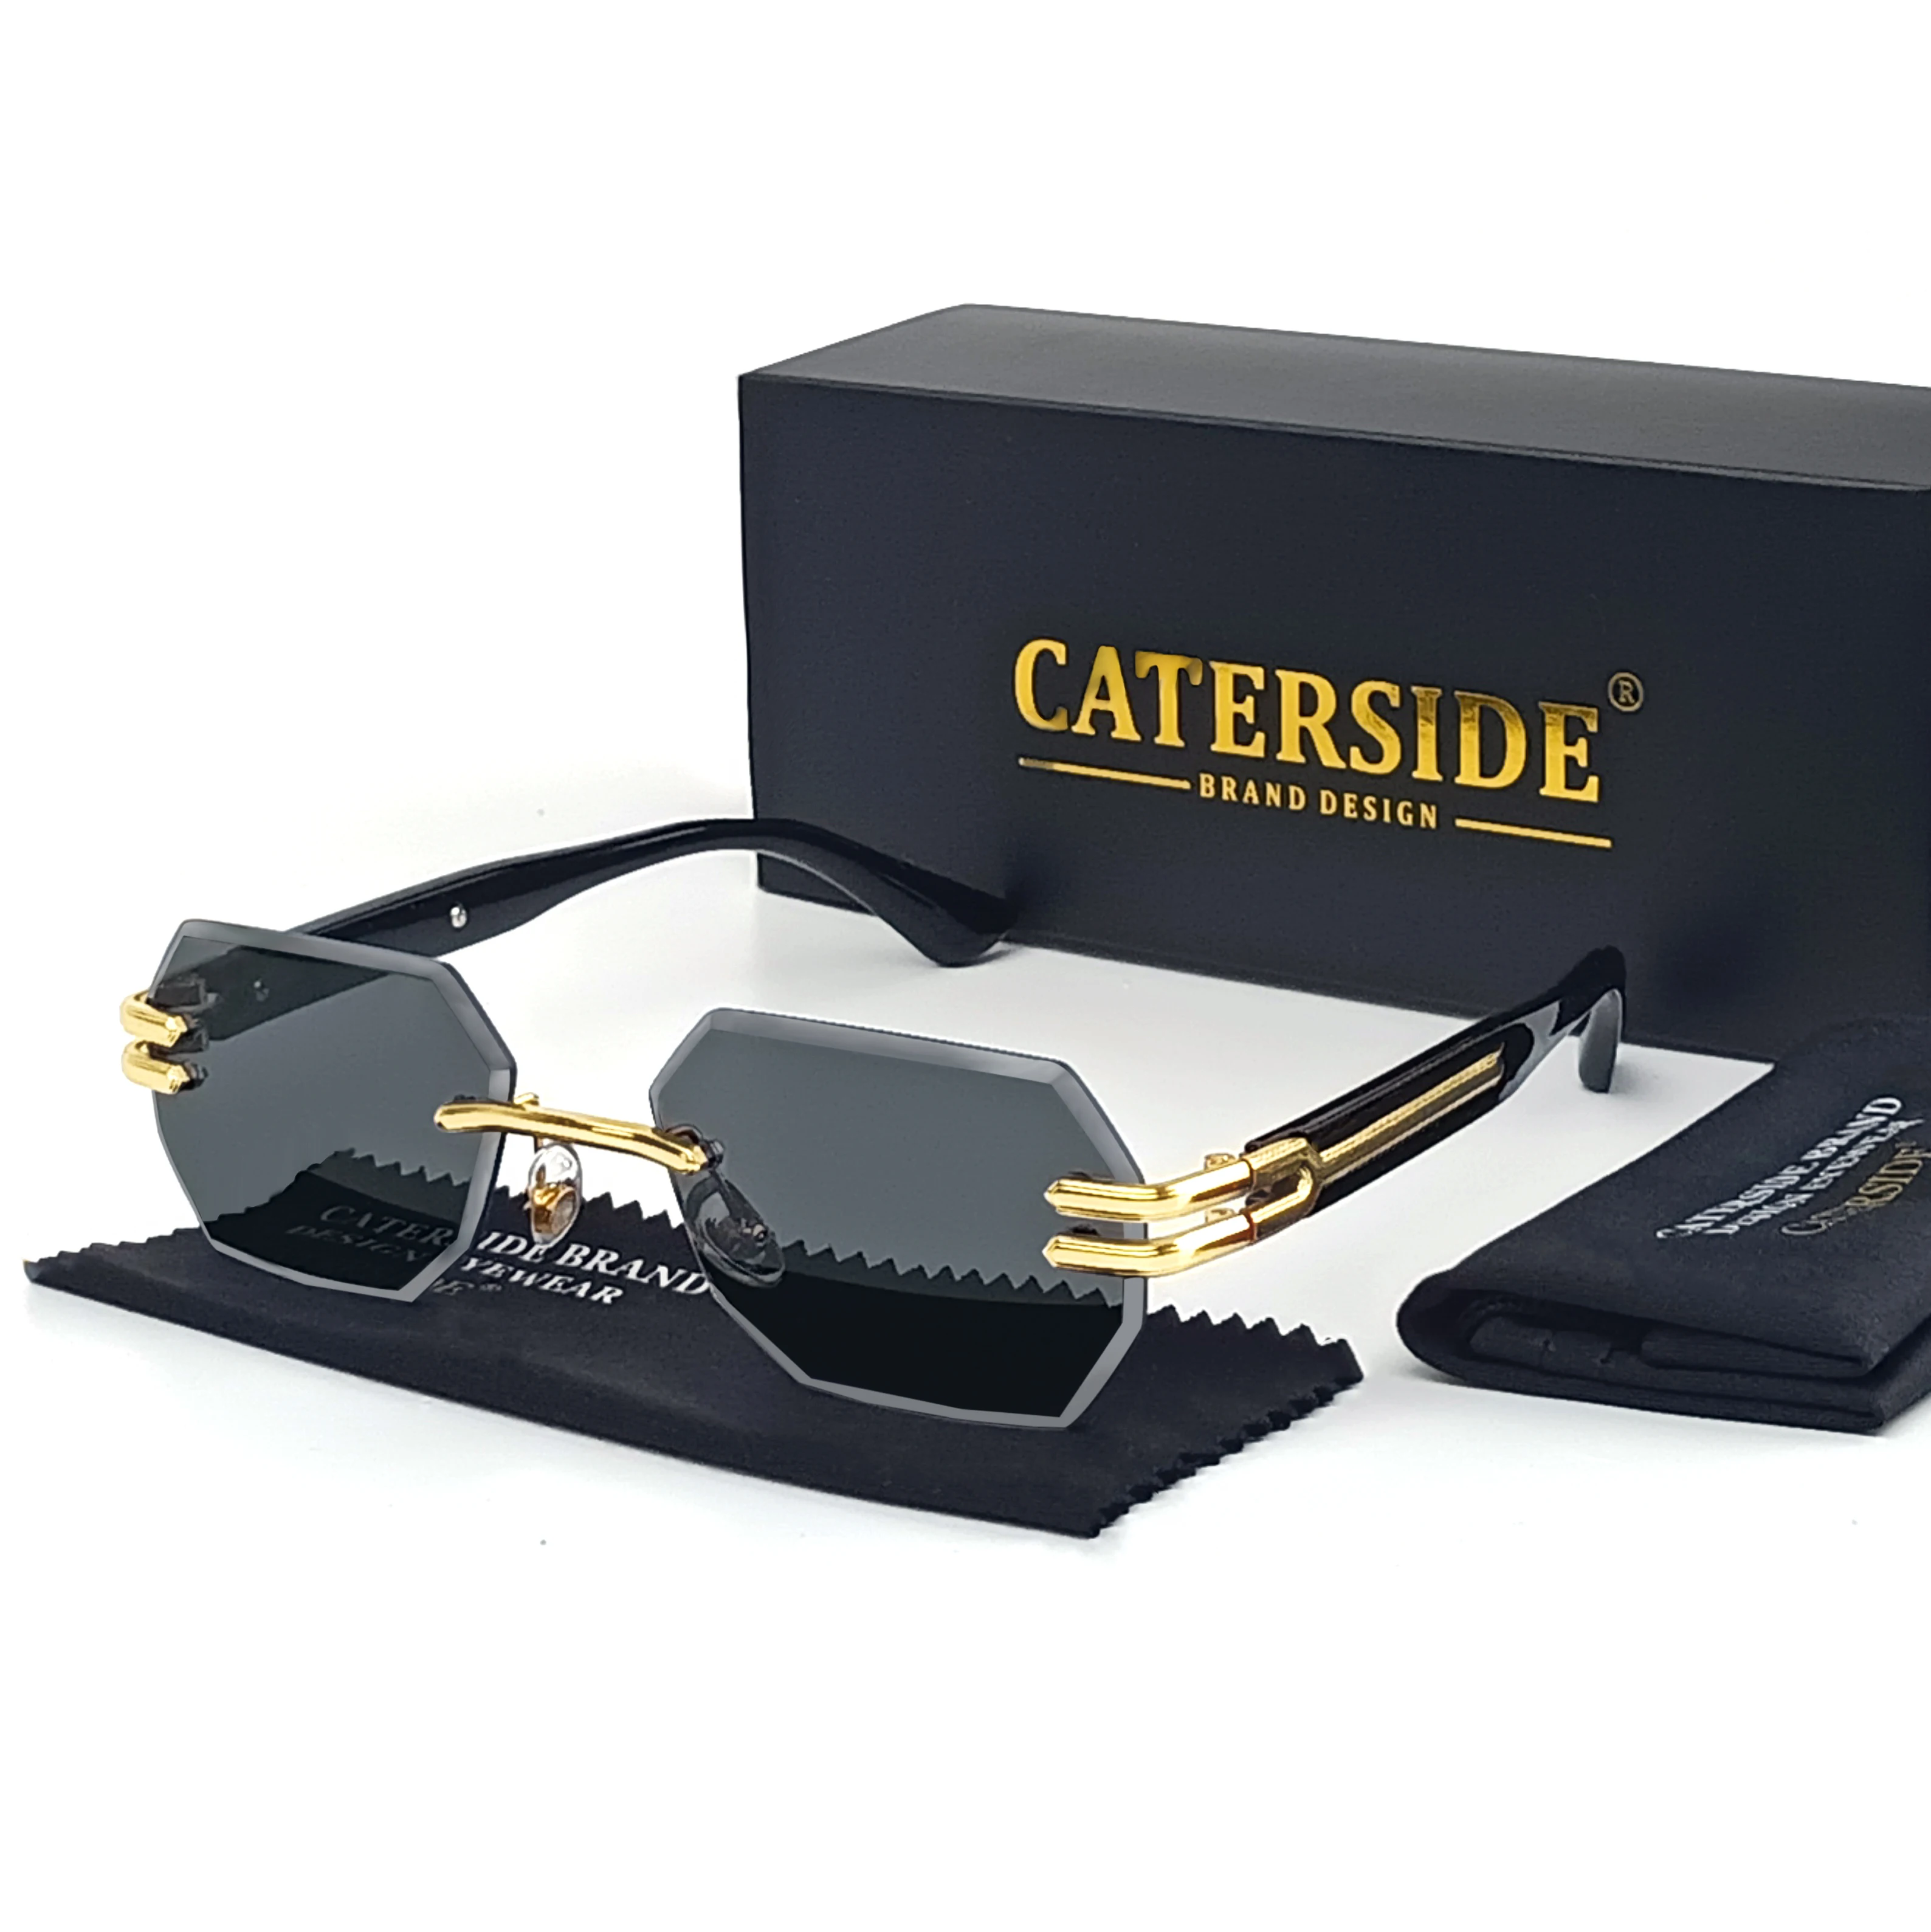 

Caterside Retro Frameless Sunglasses Men Polygonal Metal Frame Women Sun Glasses Business Outdoor Travel Gift Box Summer Style